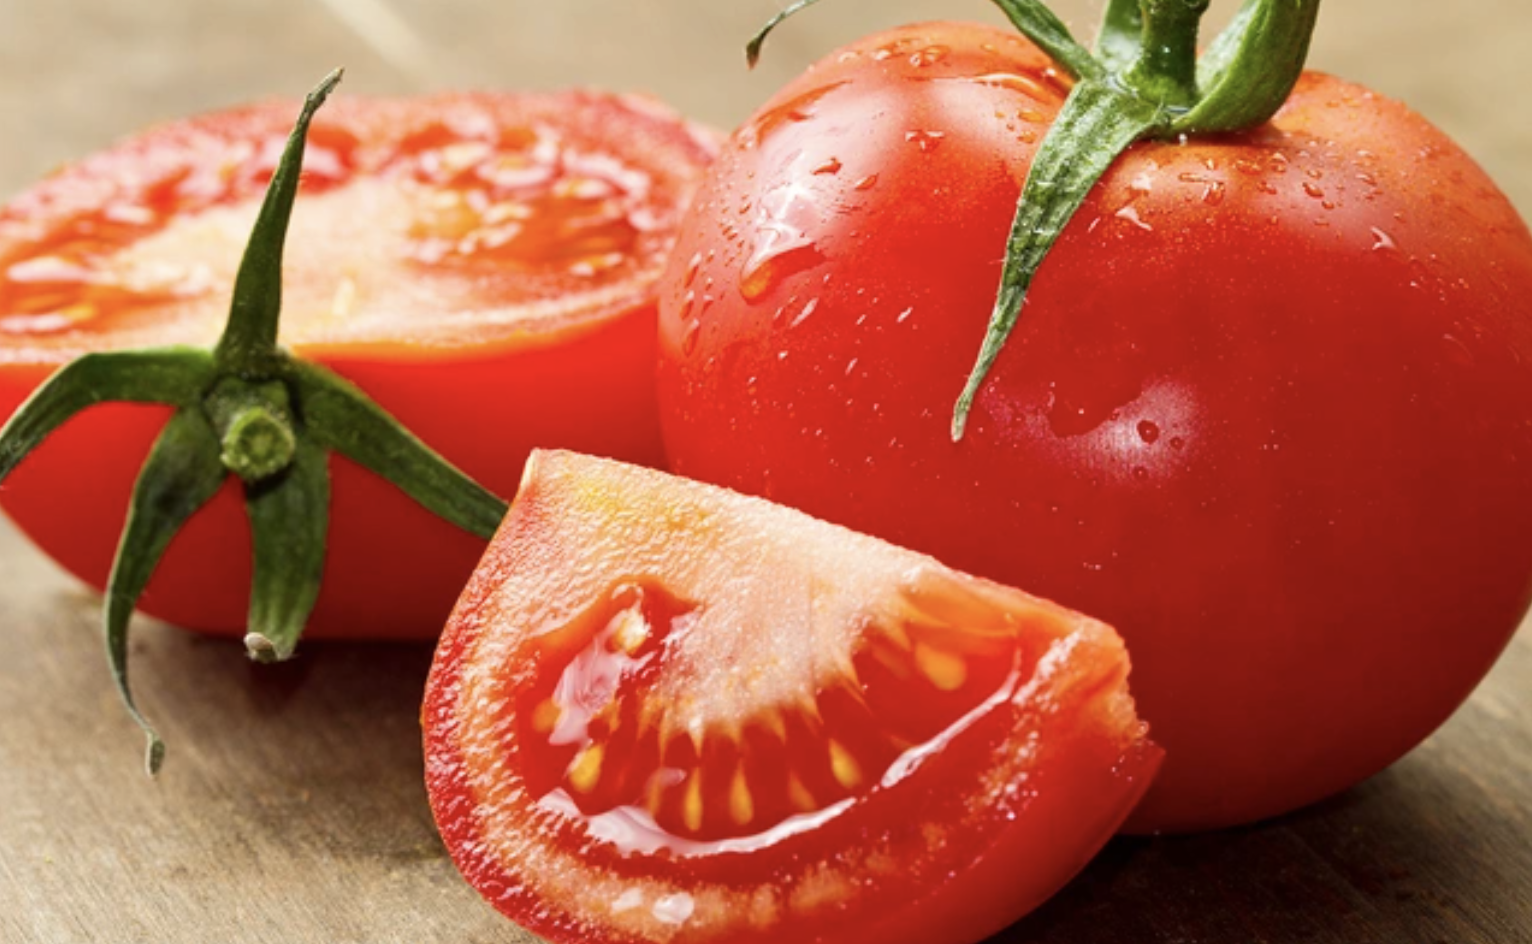 “Cặp đôi hoàn hảo” - Cà chua + Hành tây: Vừa làm tăng hương vị cho món ăn, vừa giúp hỗ trợ sức khoẻ của chúng ta - Ảnh 4